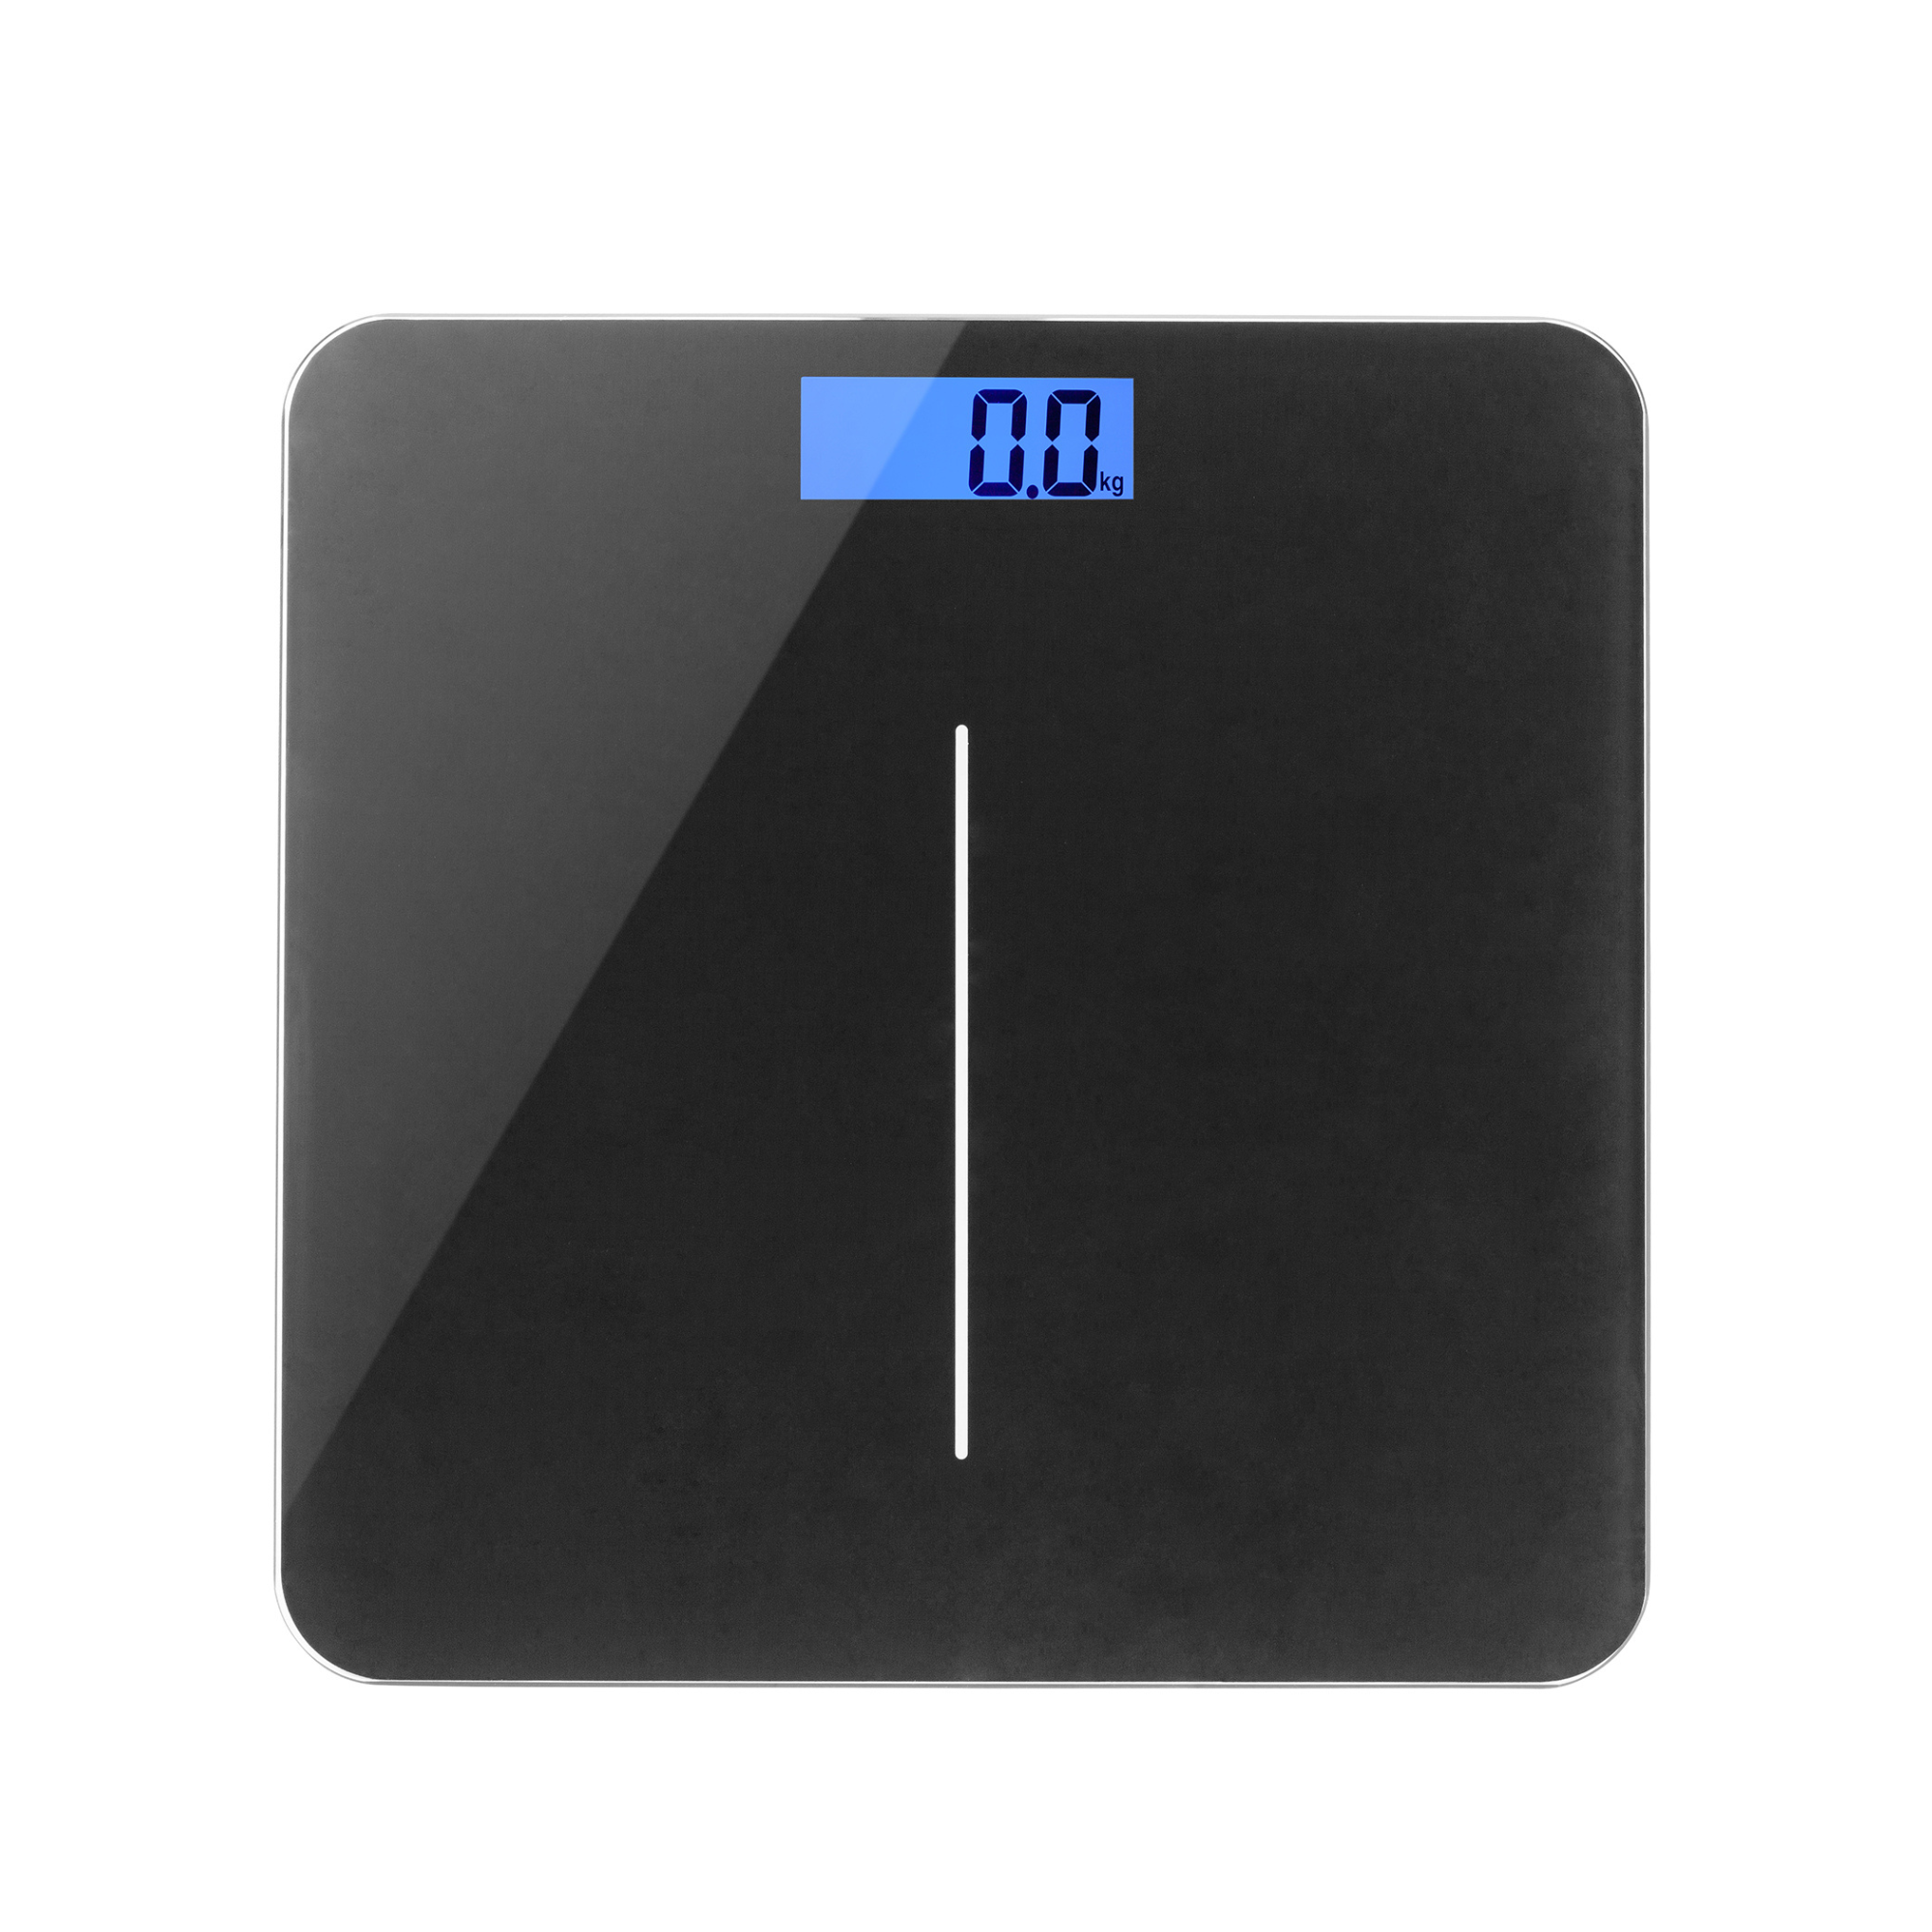 Digital Scale, Digital Bathroom & Weighing Scales